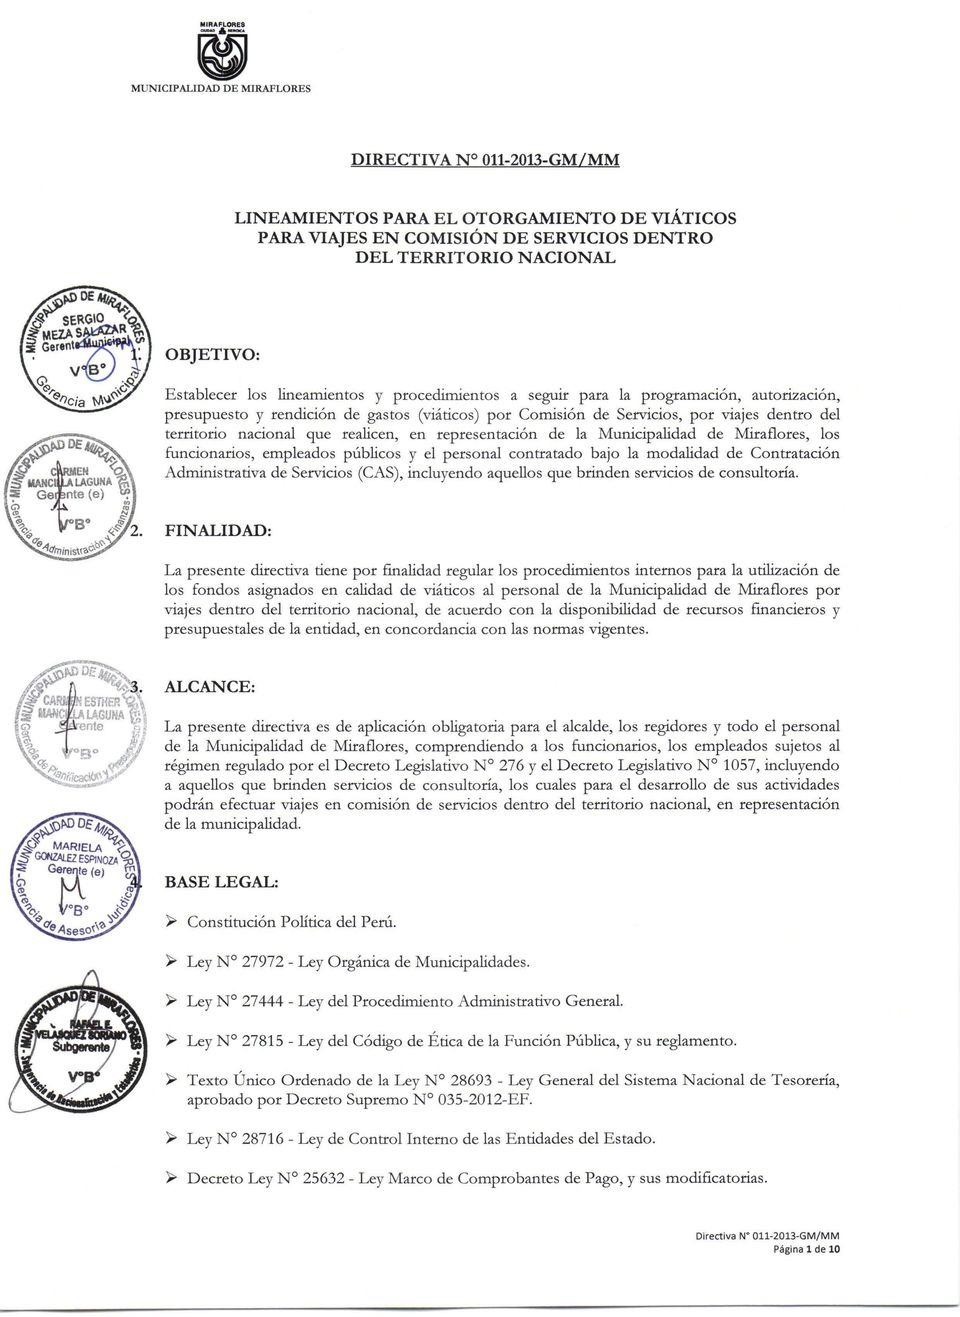 representación de la Municipalidad de Miraflores, los funcionarios, empleados públicos y el personal contratado bajo la modalidad de Contratación Administrativa de Servicios (CAS), incluyendo